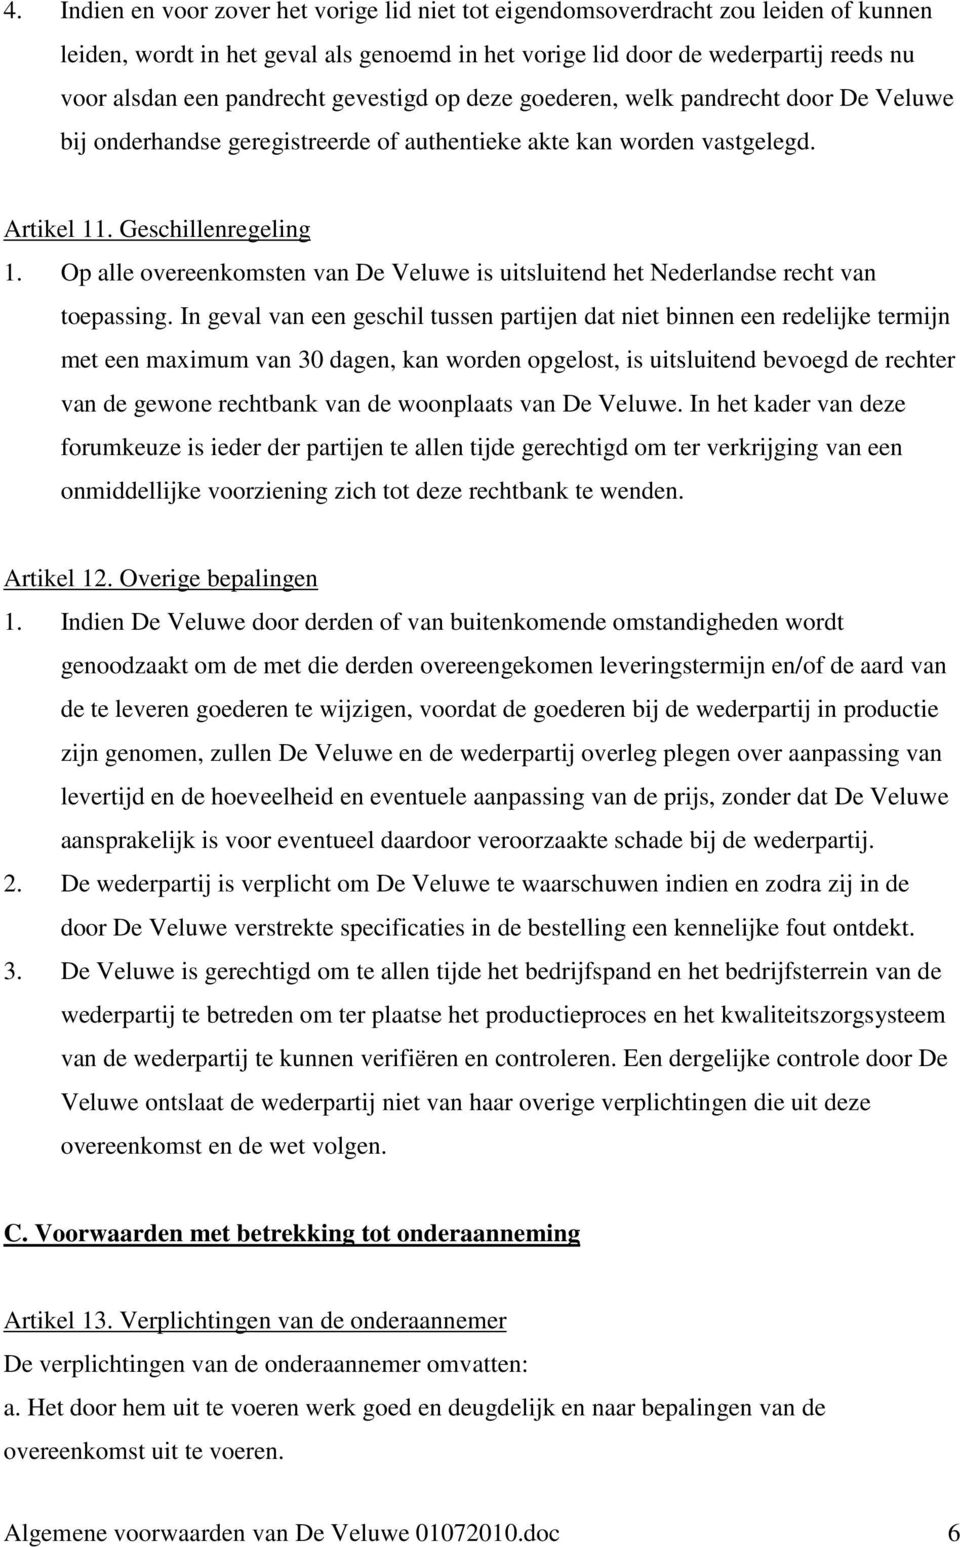 Op alle overeenkomsten van De Veluwe is uitsluitend het Nederlandse recht van toepassing.